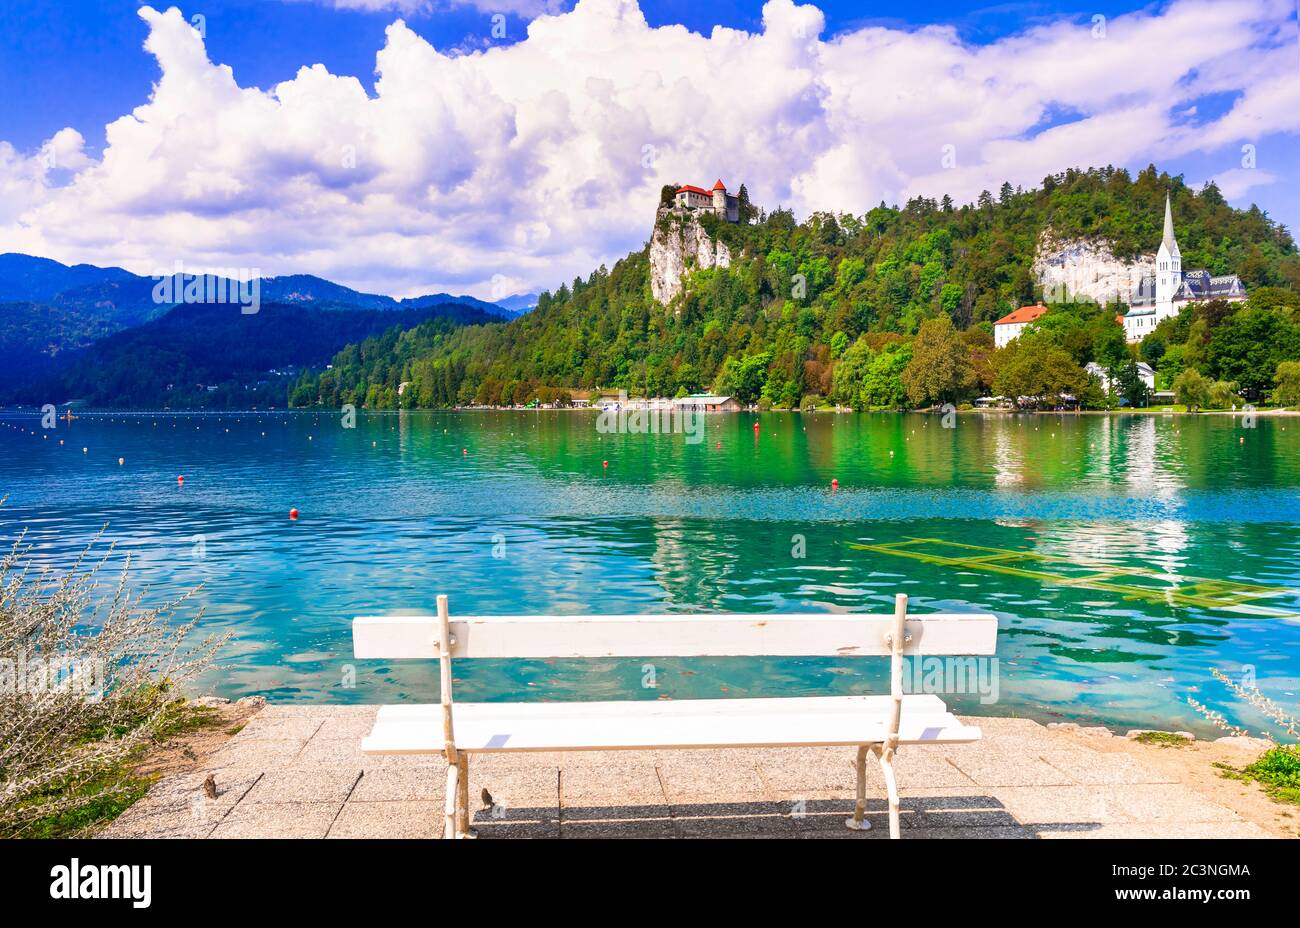 La beauté dans la nature. Paysage de lac - magnifique Bled à Slowenia, attraction touristique populaire Banque D'Images